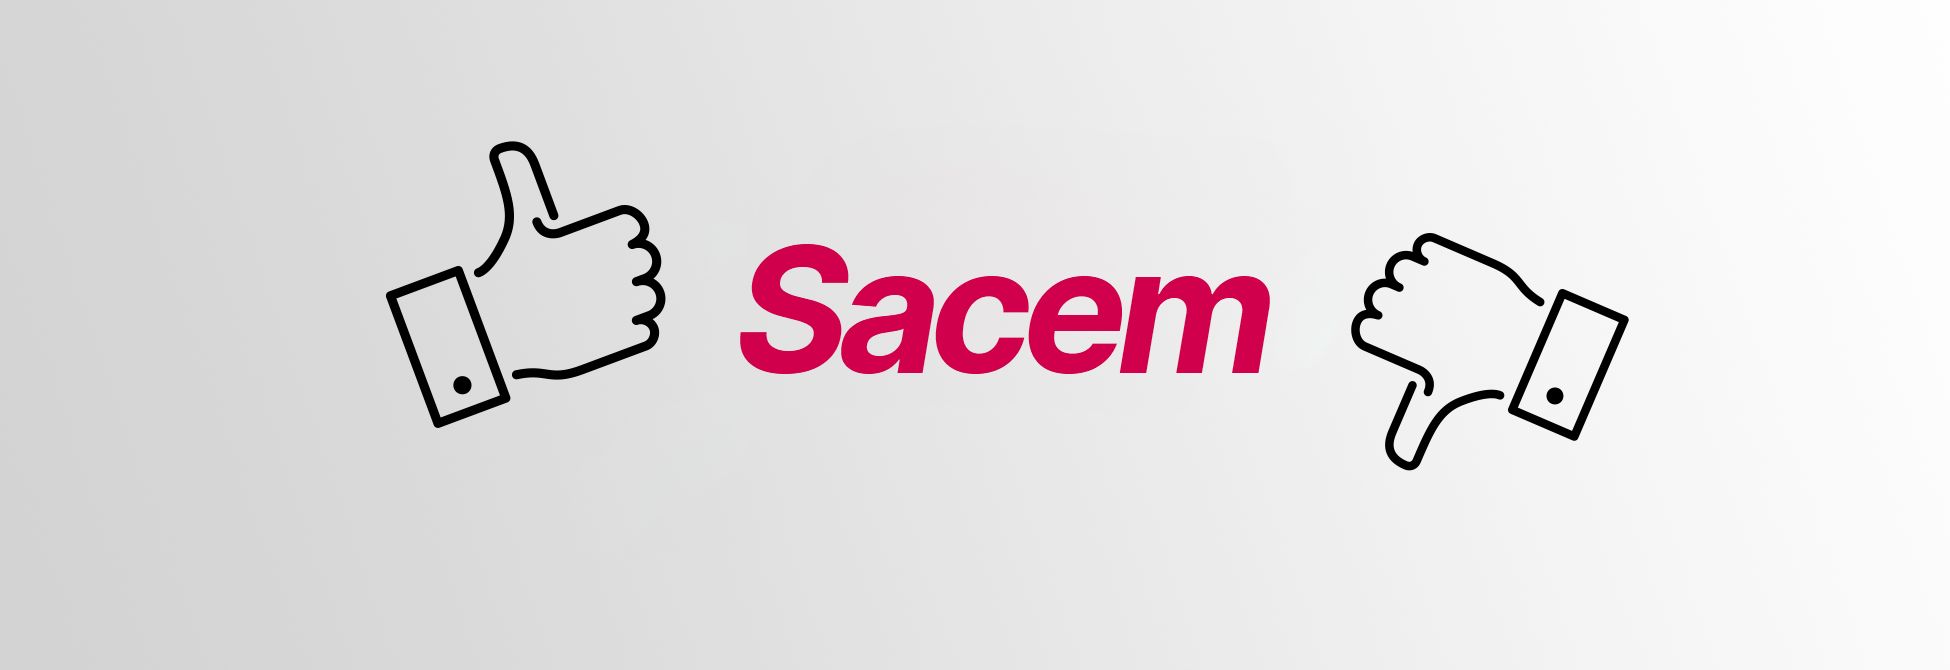 Les avantages et inconvénients de la SACEM | RightsNow!